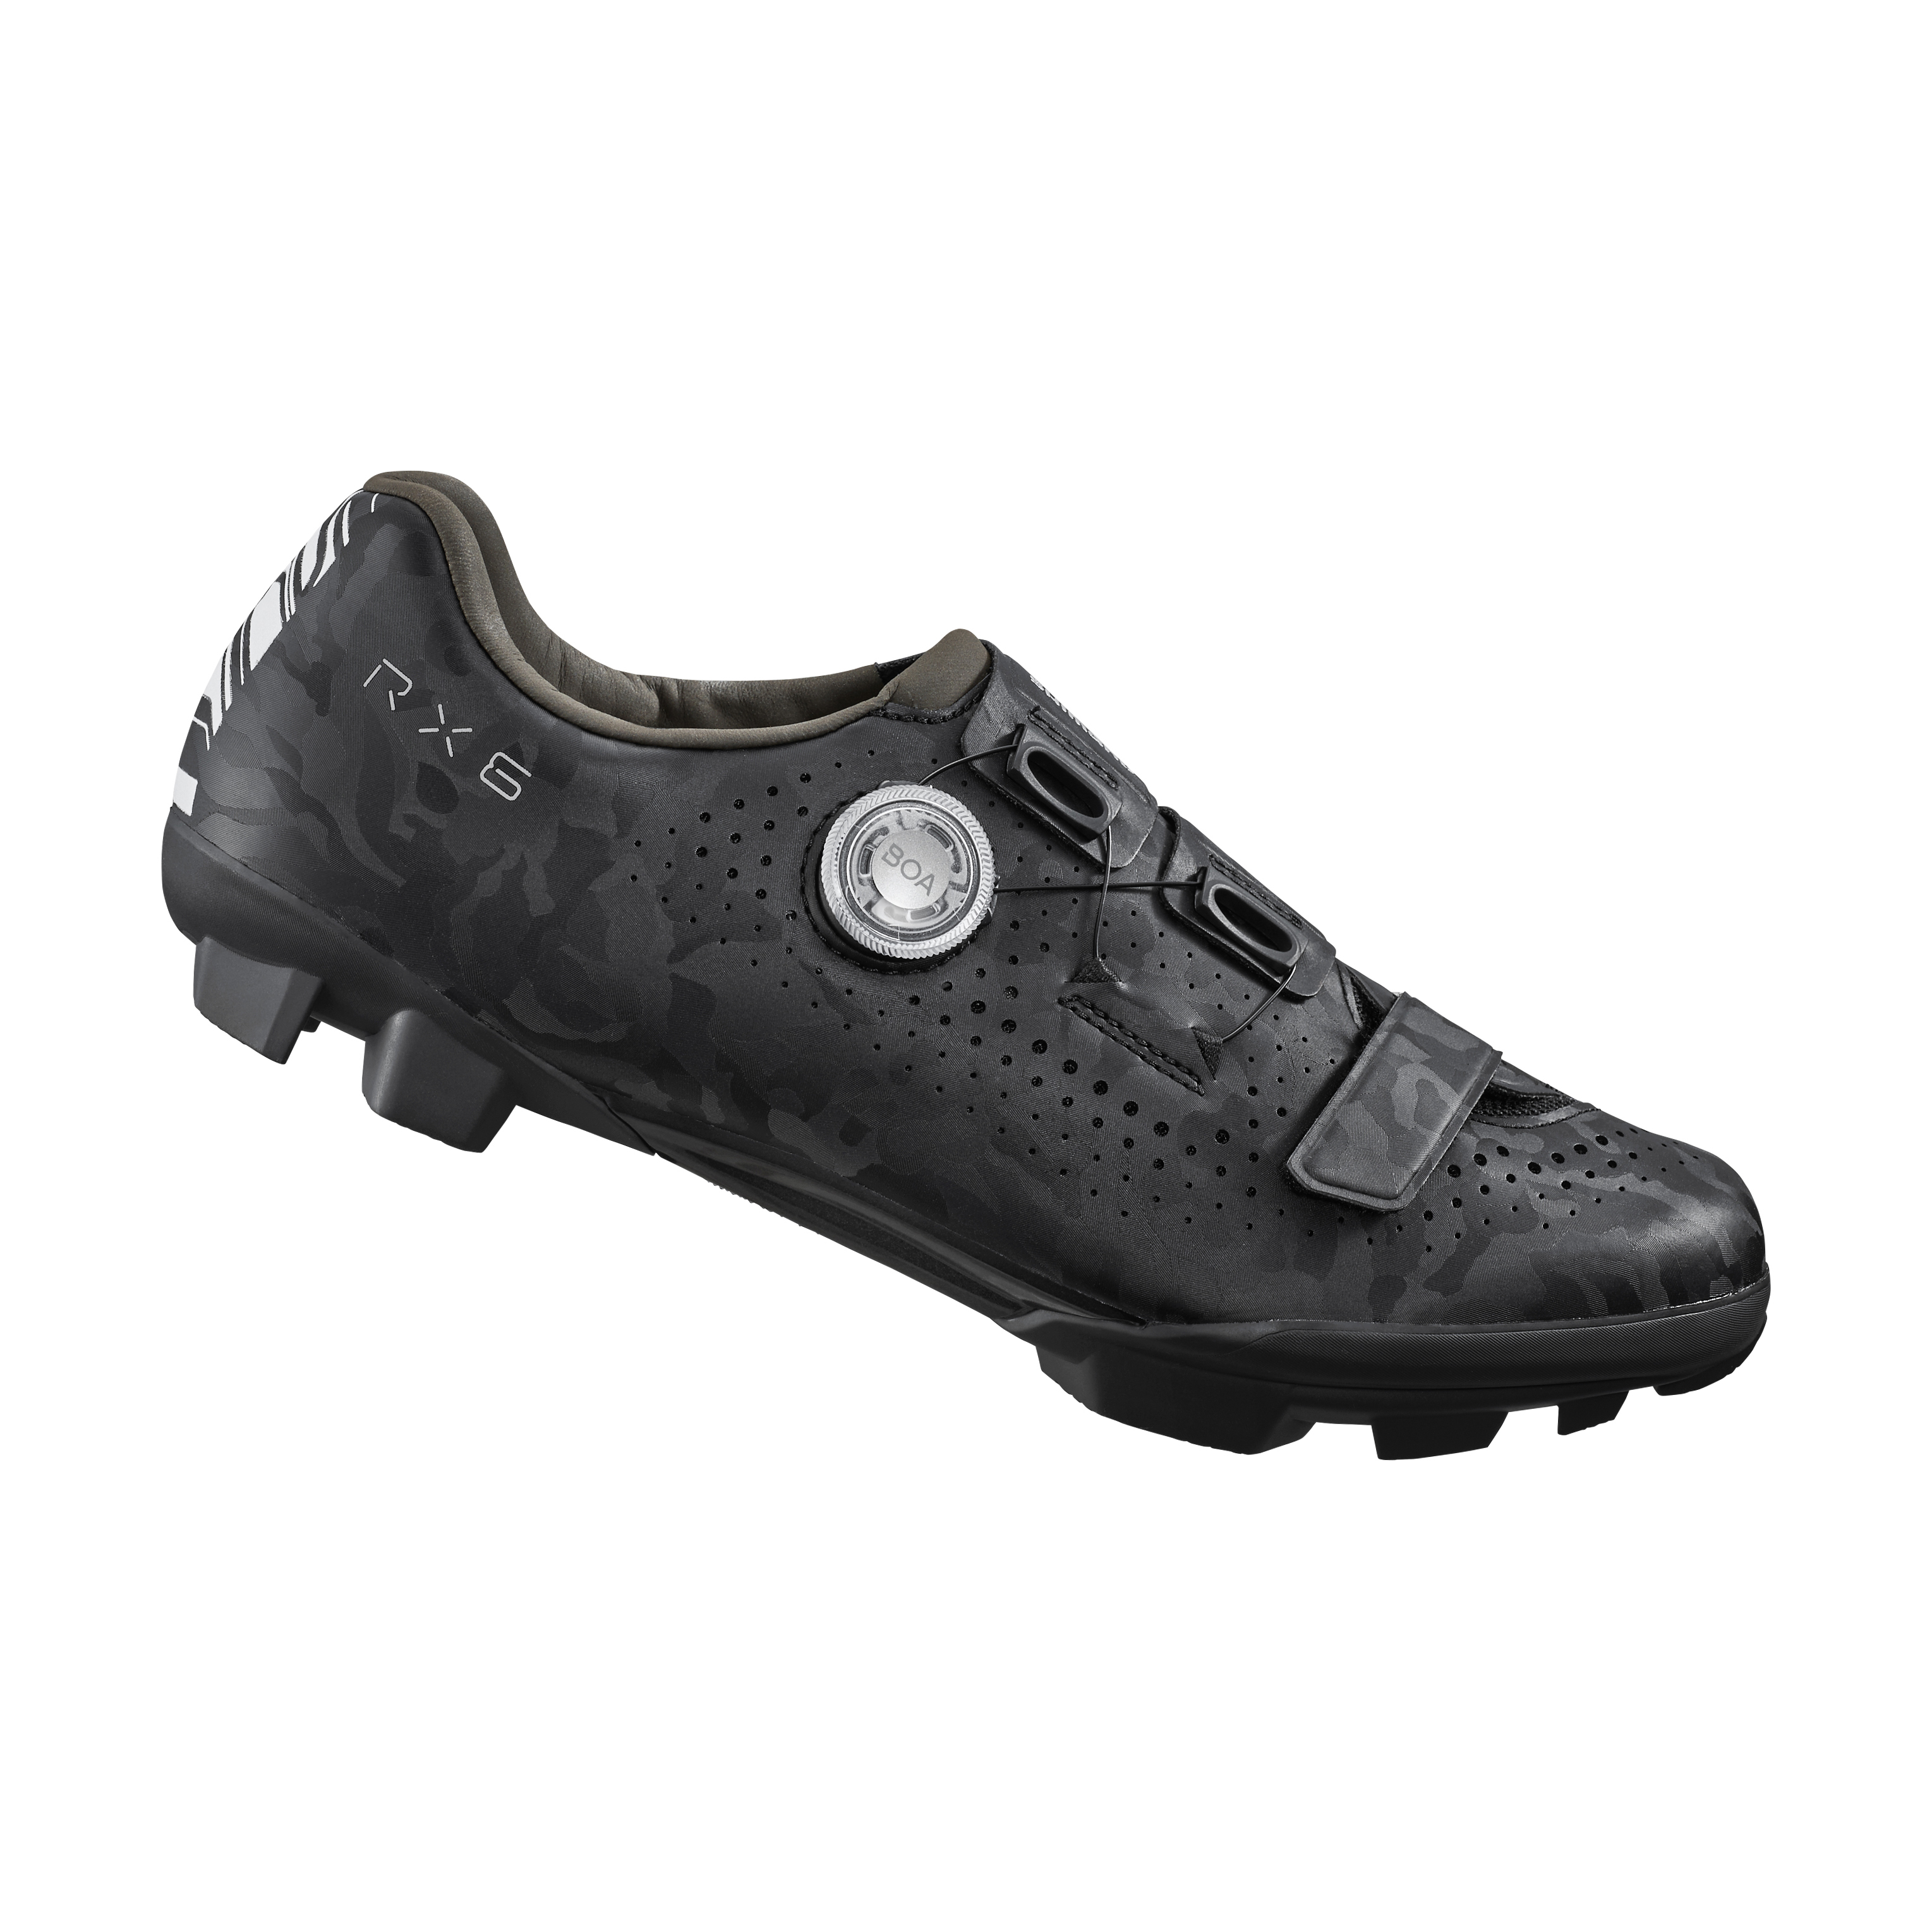 SHIMANO gravel obuv SH-RX600, pánská, černá, 47